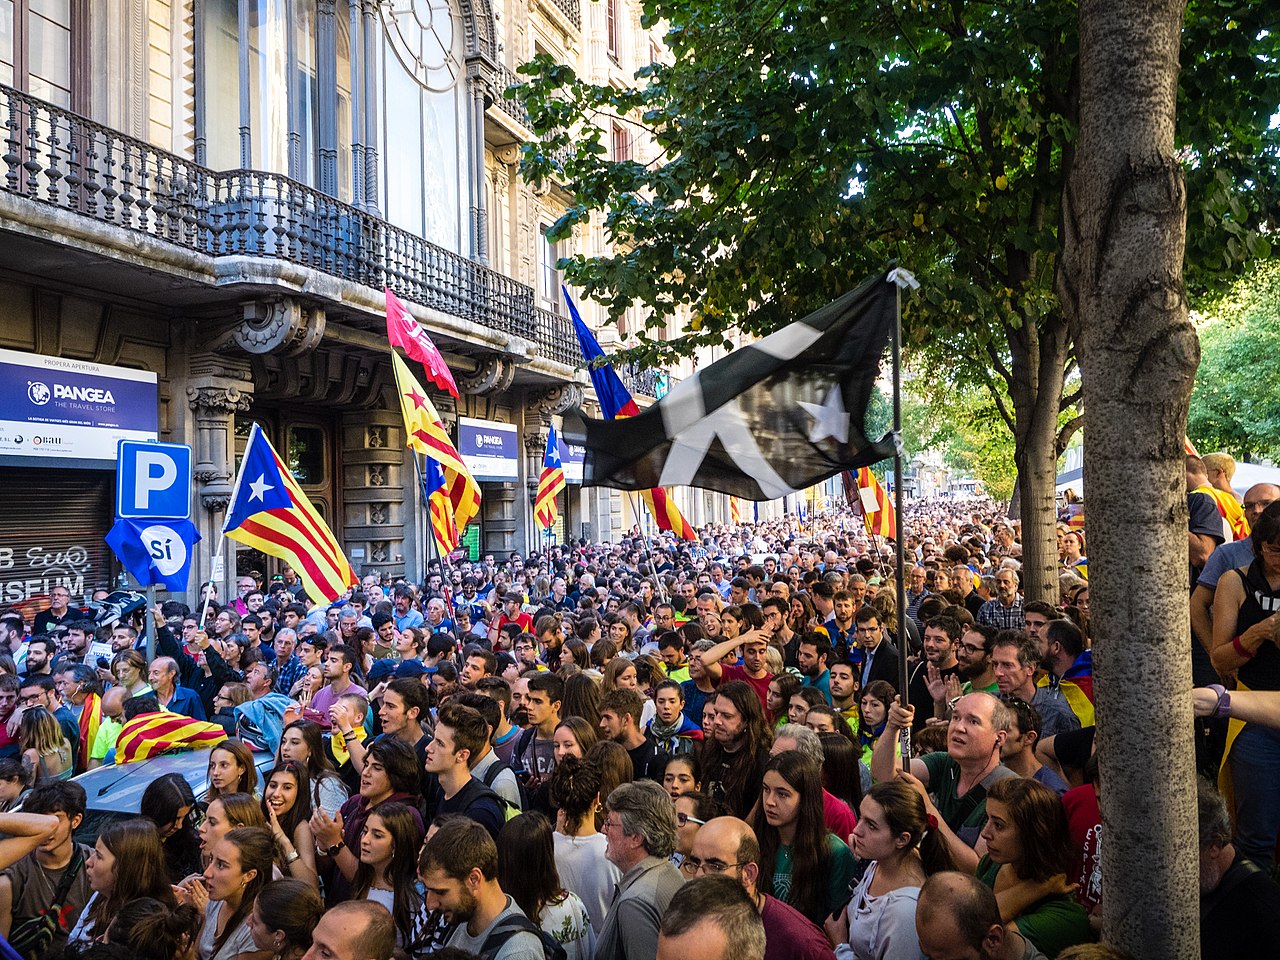 Cataluña vuelve a reclamar la independencia de España. Decenas de miles de personas participaron en una protesta masiva en Barcelona – VIDEO